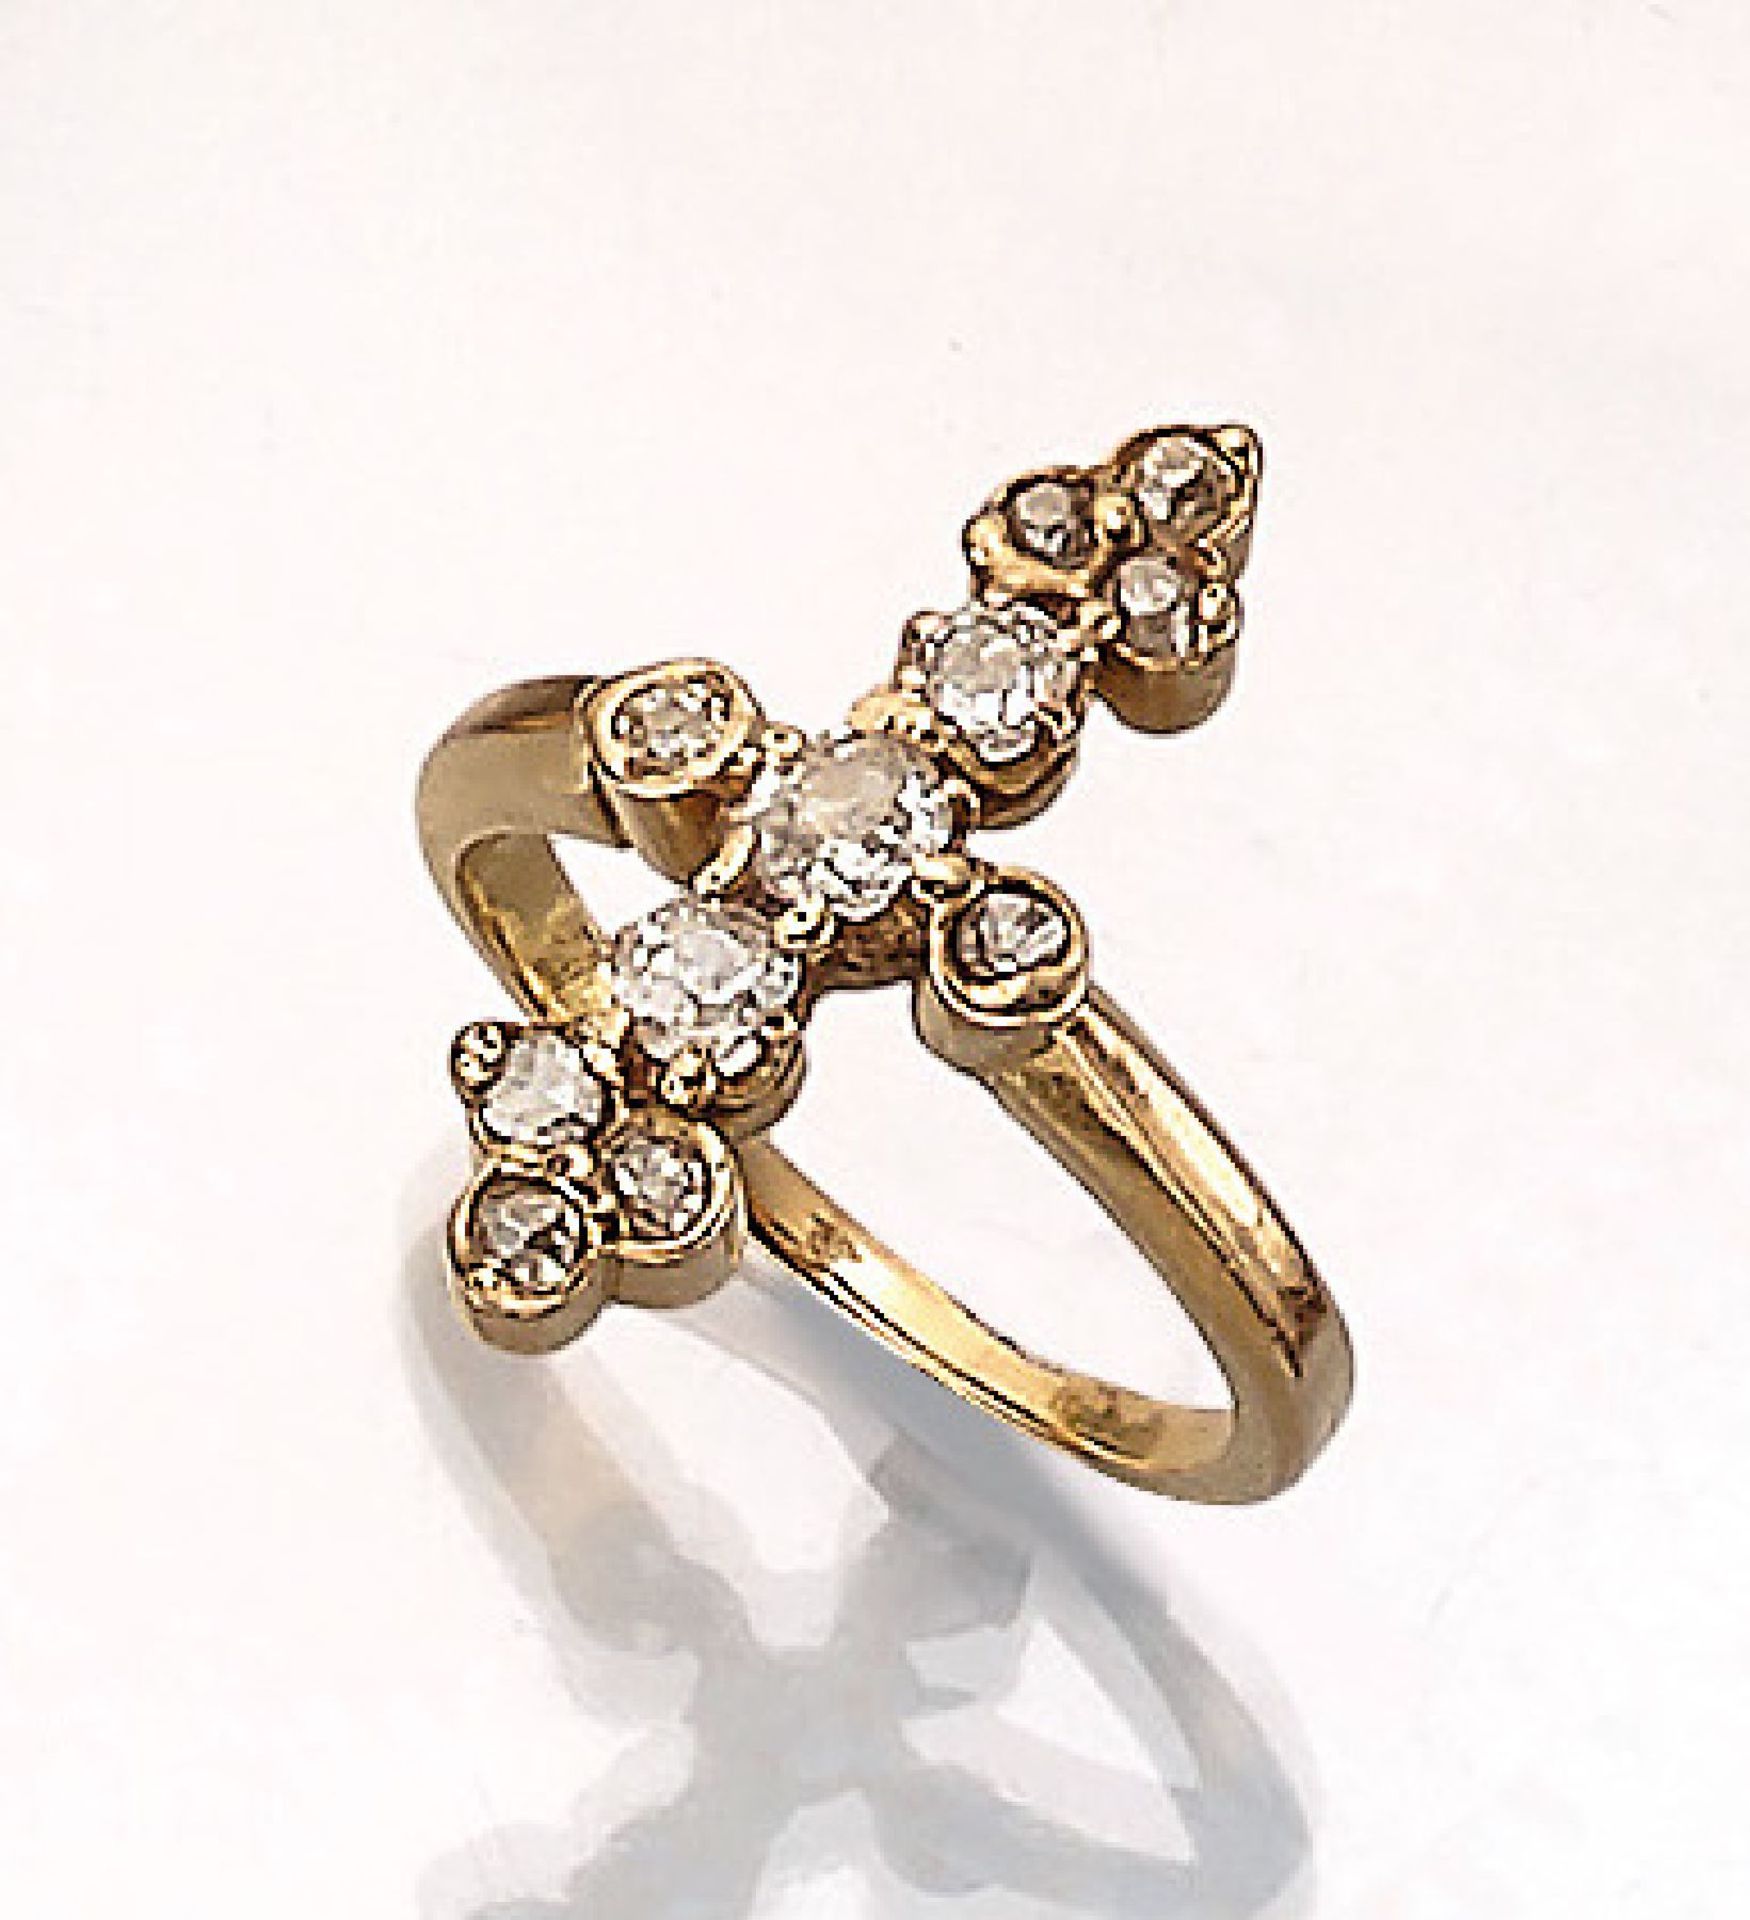 18 kt Gold Ring mit Diamanten, um 1890-1900, GG 750/000, Altschliffdiamanten zus. ca. 0.50 ct Weiß-